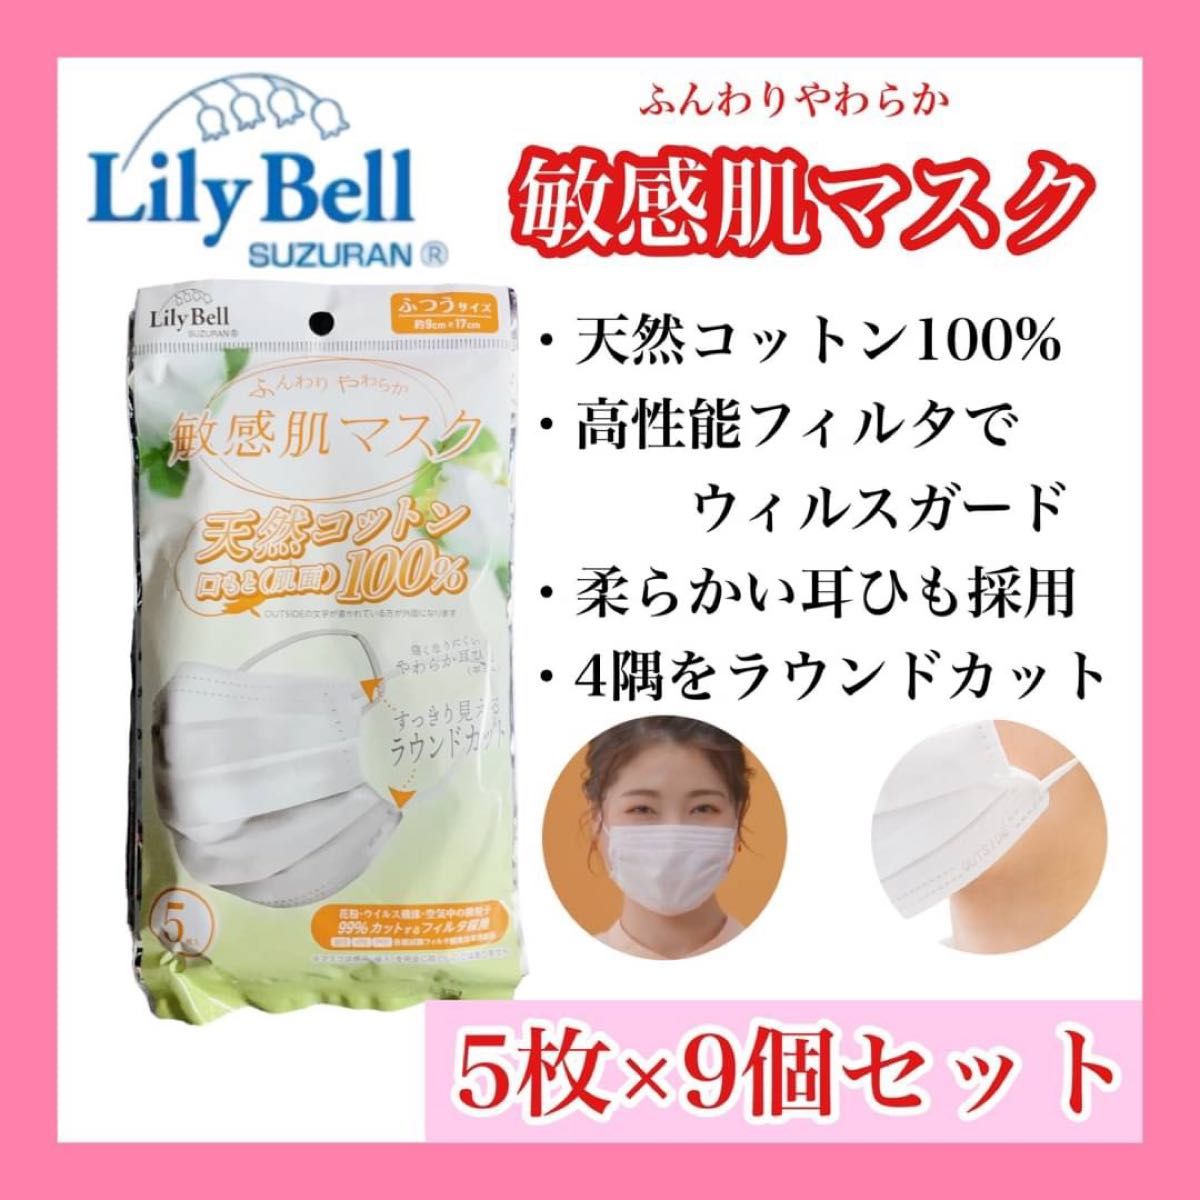 マスク LilyBell ふつうサイズ 9袋セット 肌敏感マスク